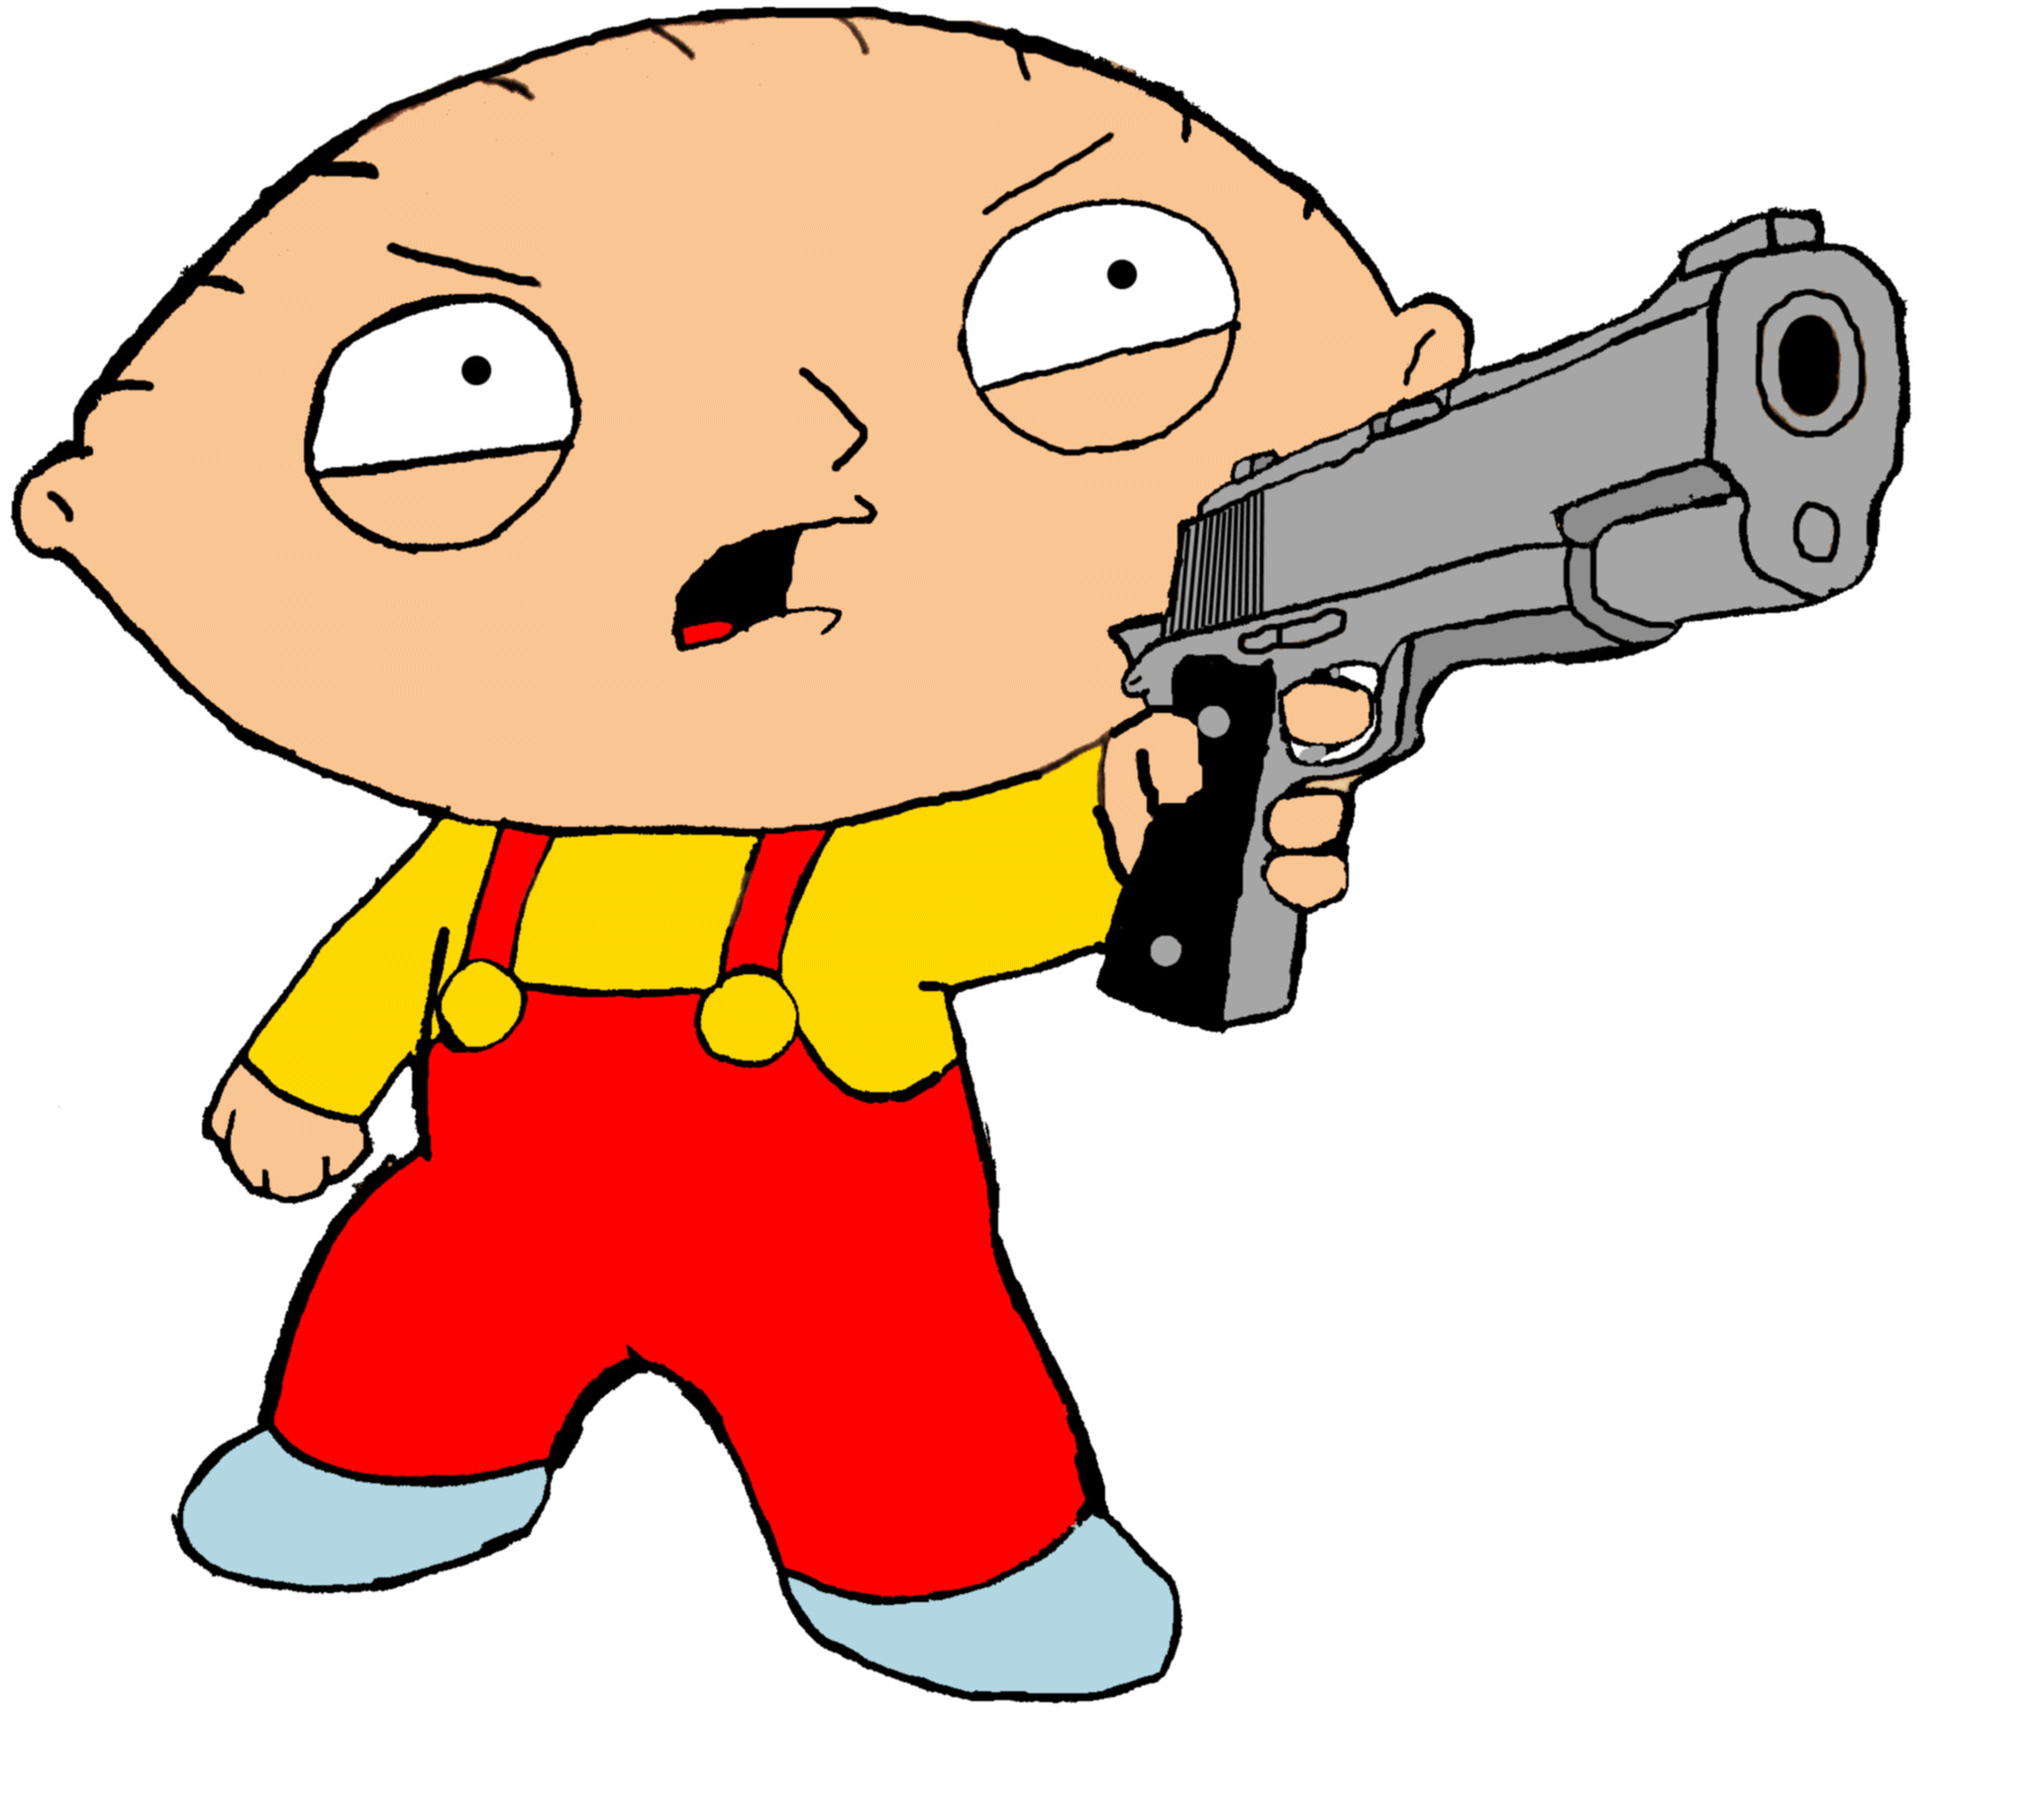 Stewie griffin with gun